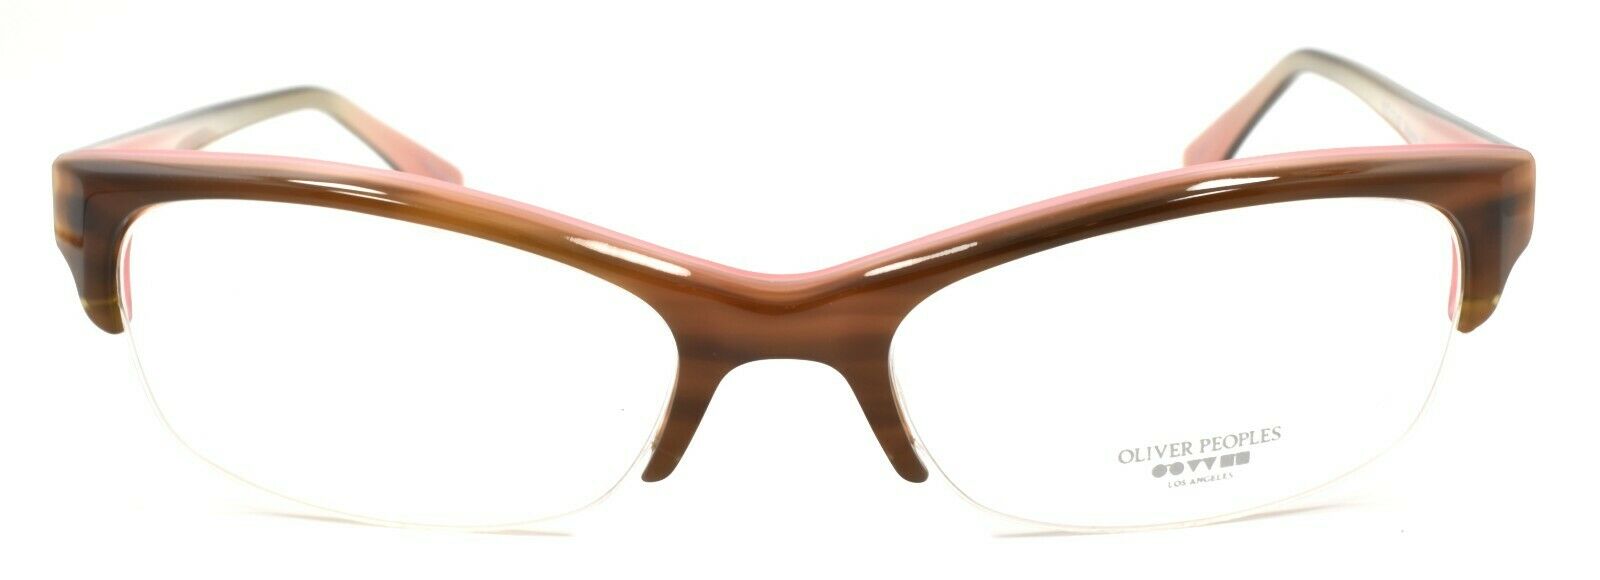 2-Oliver Peoples Boheme OTPI Glasses Frames Half Rim PETITE 51-17-137 Brown / Pink-827934065864-IKSpecs